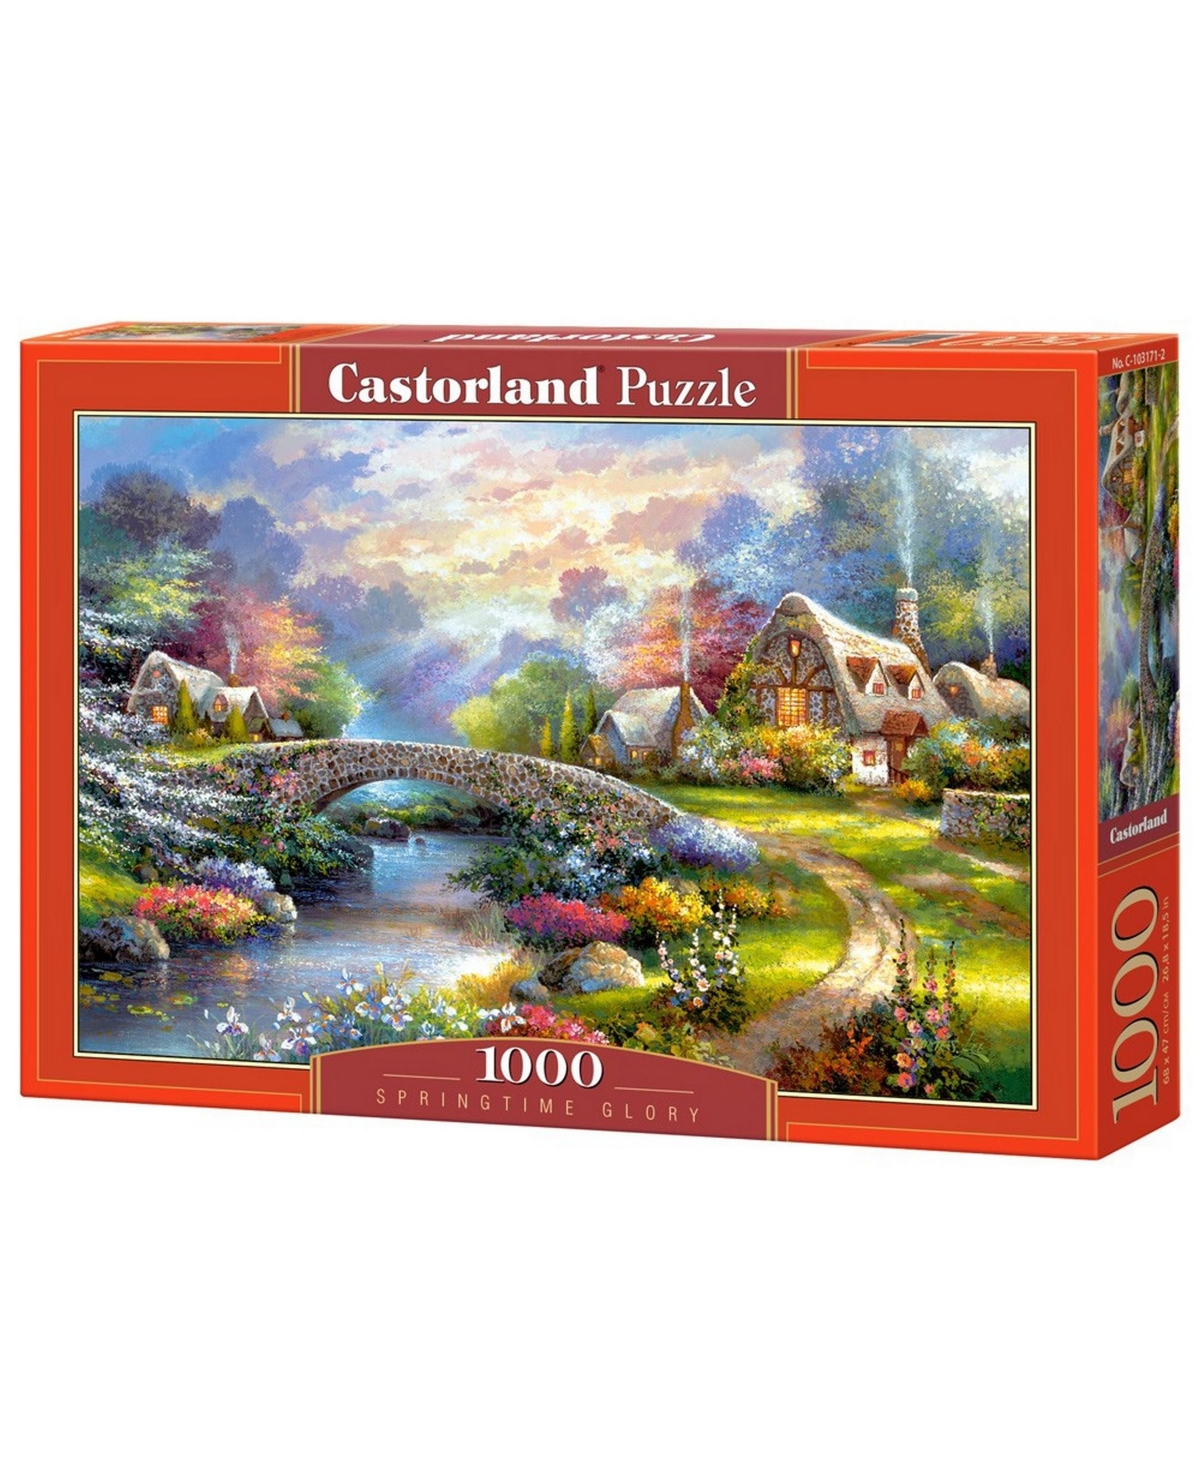 Castorland Springtime Glory Jigsaw Puzzle Set, 1000 Piece In Multicolor